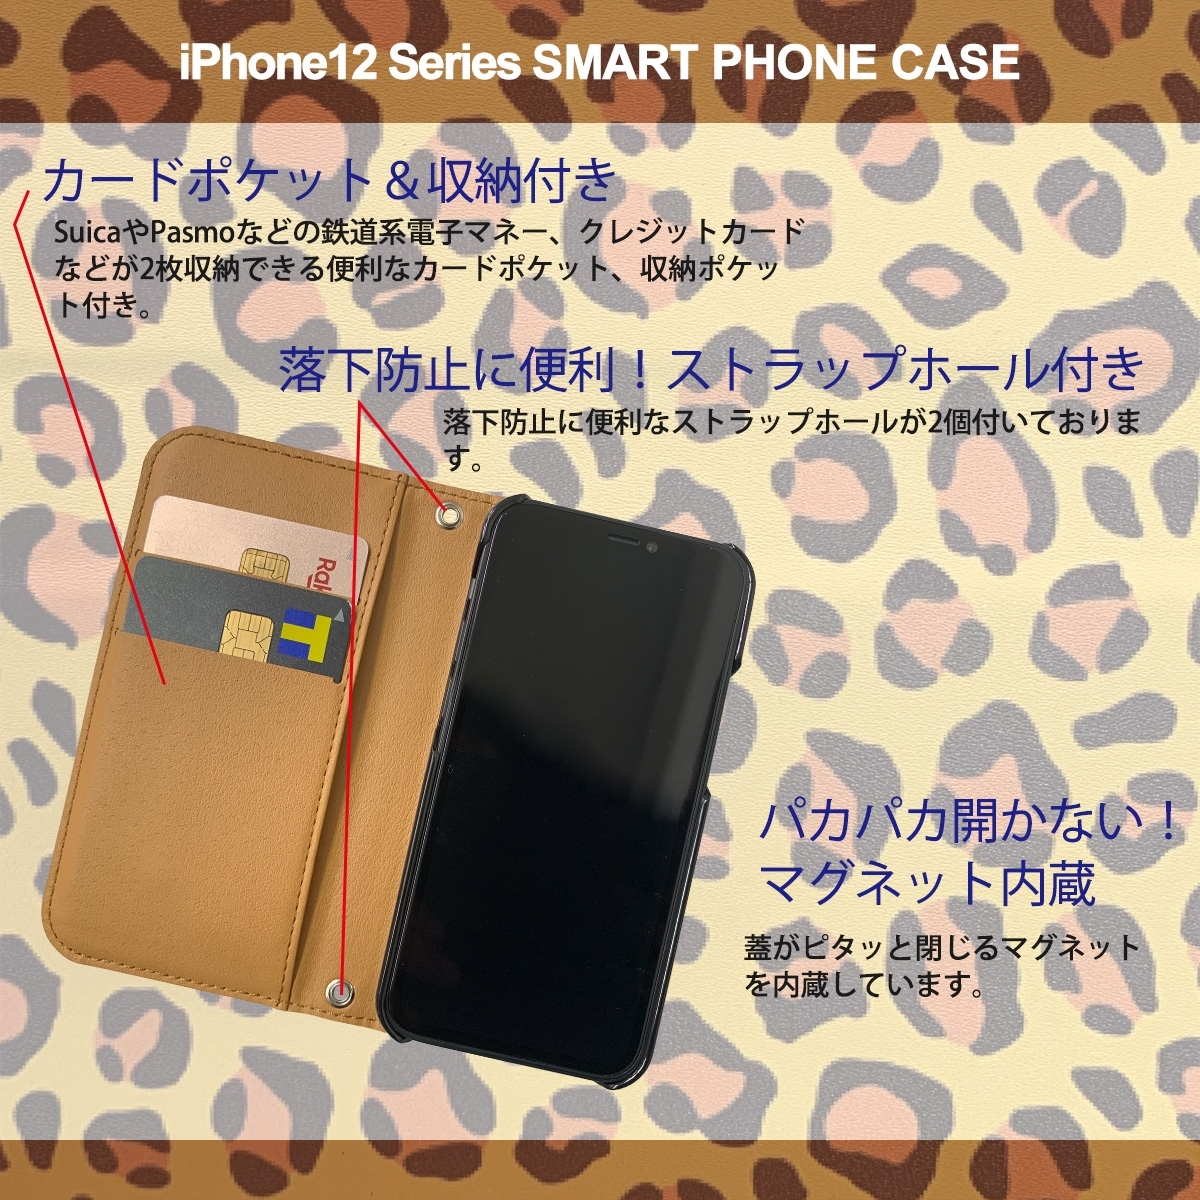 1】 iPhone12 Mini 手帳型 アイフォン ケース スマホカバー PVC レザー アニマル柄 ヒョウ柄 イエロー